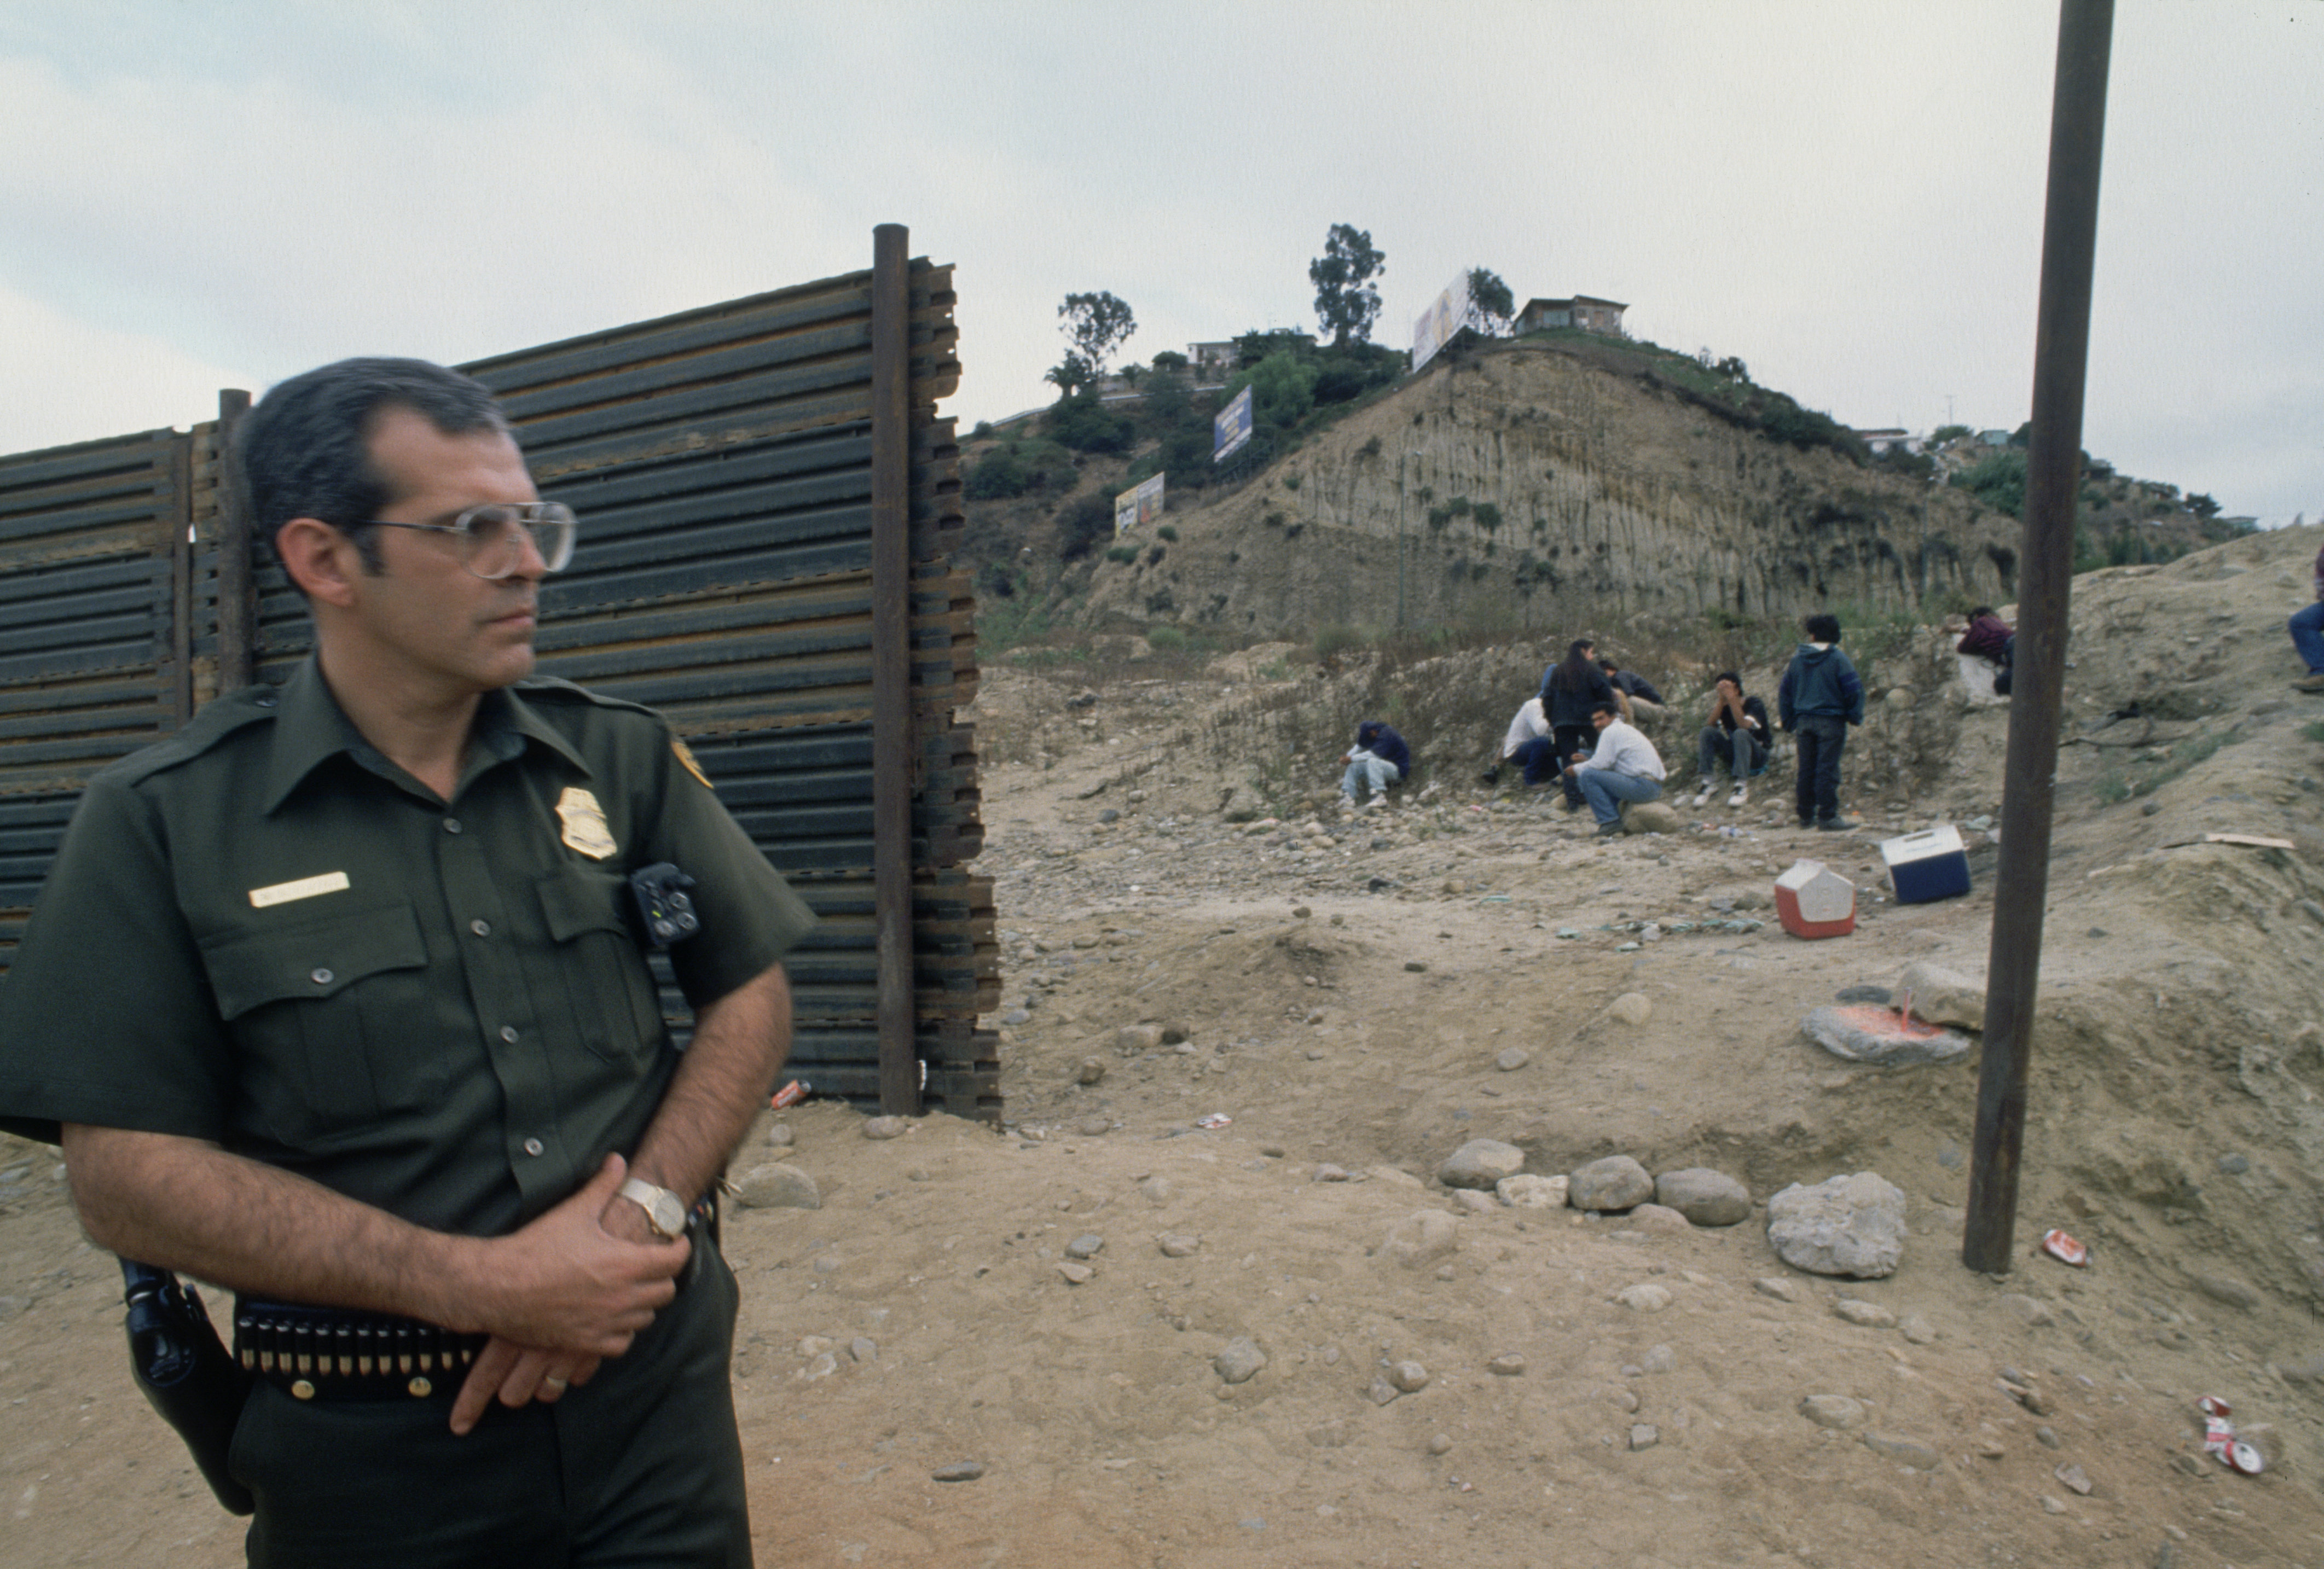 27 Fotos Que Muestran La Transformación De La Frontera Eu México 0899